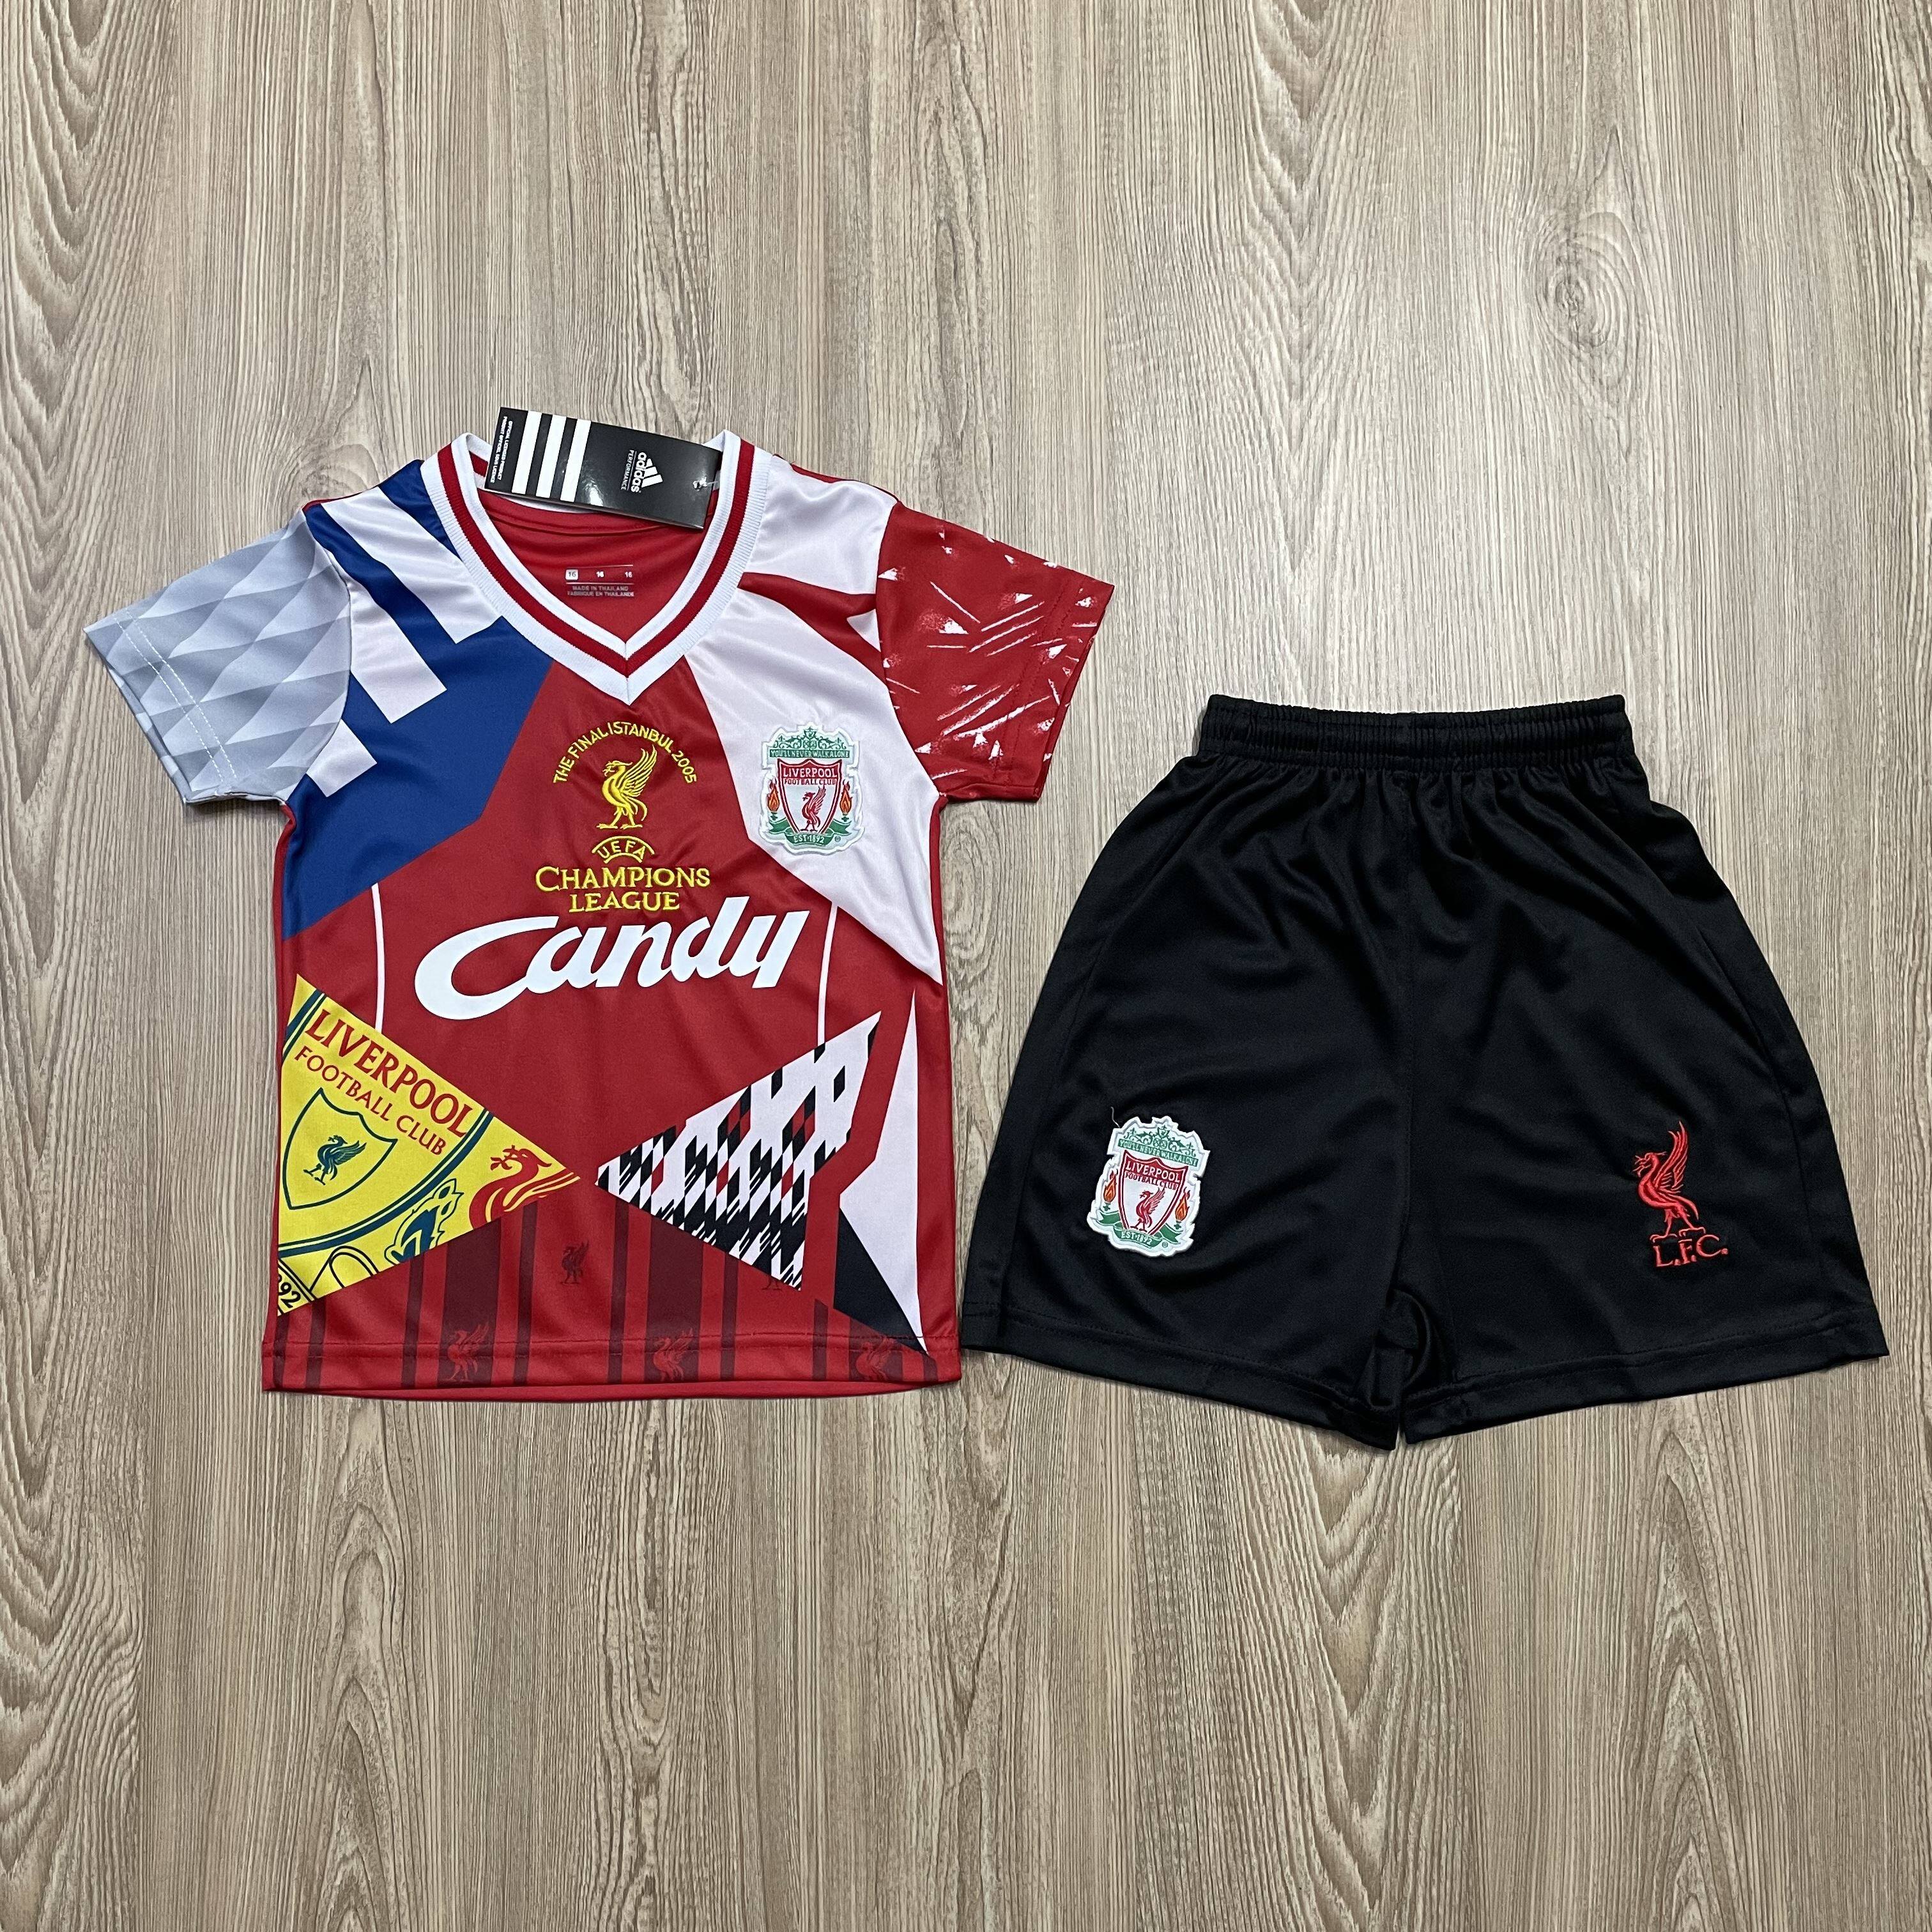 ชุดบอลเด็ก Liverpool ชุดกีฬาเด็กทีม เสื้อทีม ลิเวอร์พูลย้อนยุค ซื้อครั้งเดียวได้ทั้งชุด (เสื้อ+กางเกง) ตัวเดียวในราคาส่ง เกรด-A